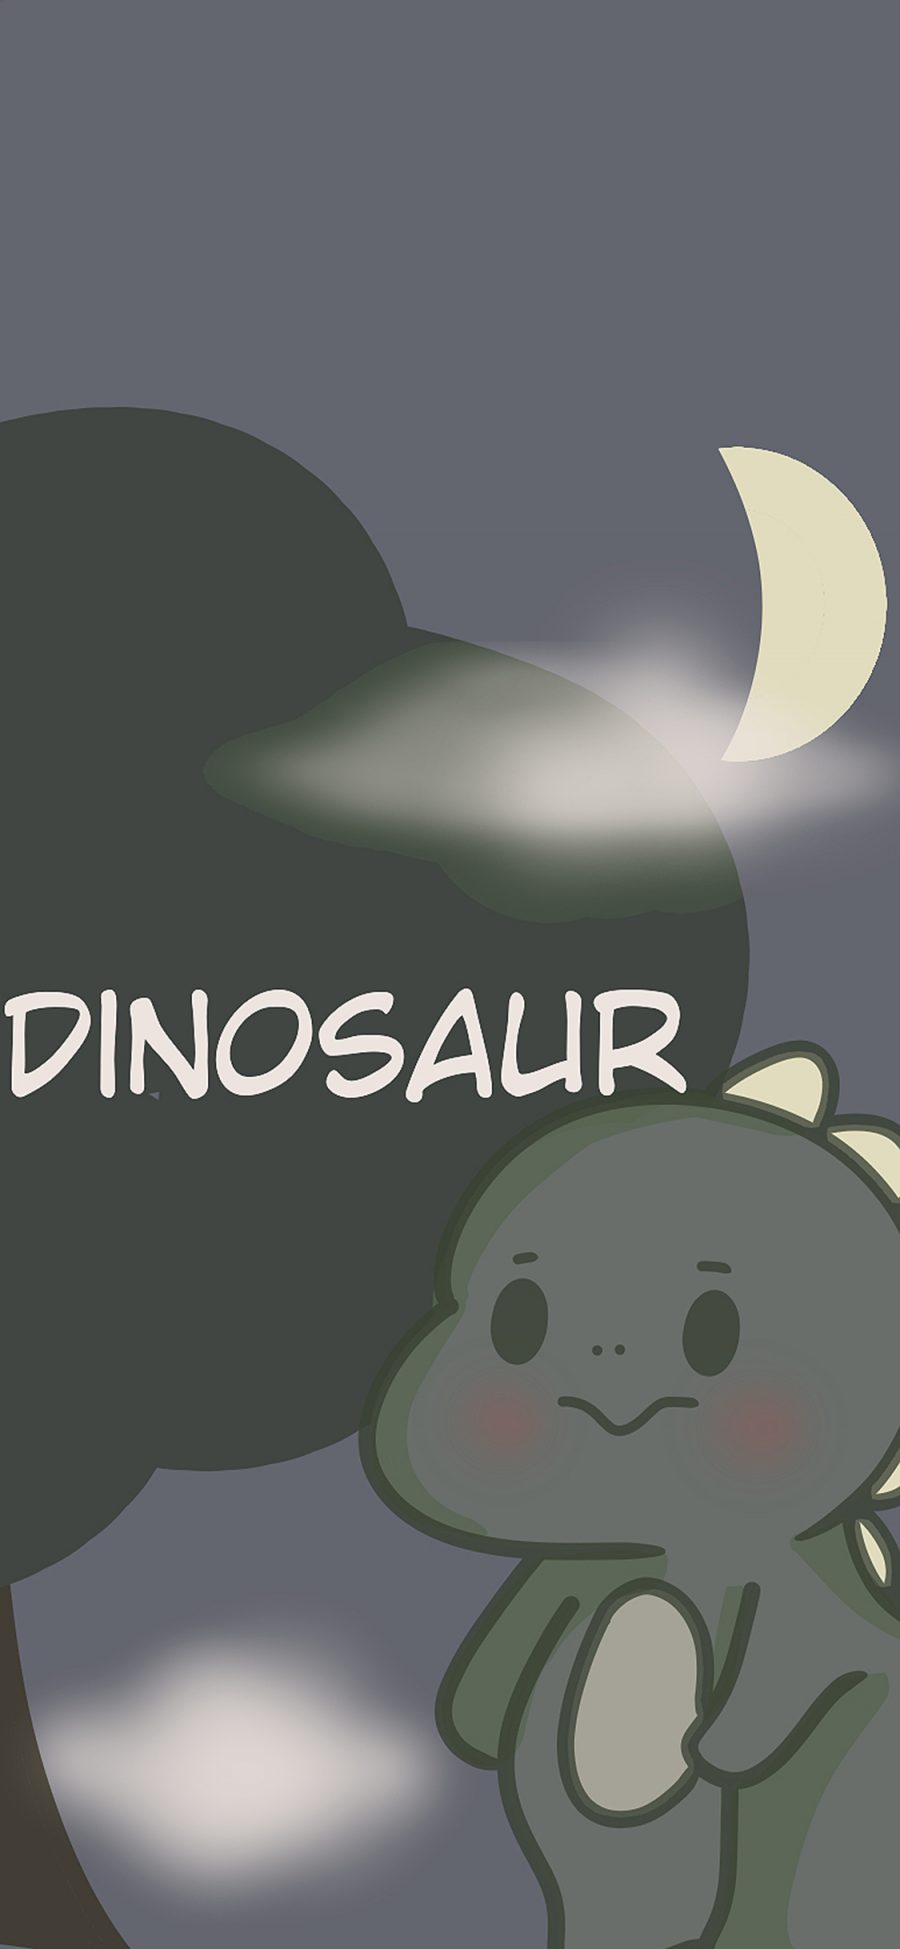 [2436×1125]可爱 小恐龙 dinosaur 苹果手机动漫壁纸图片